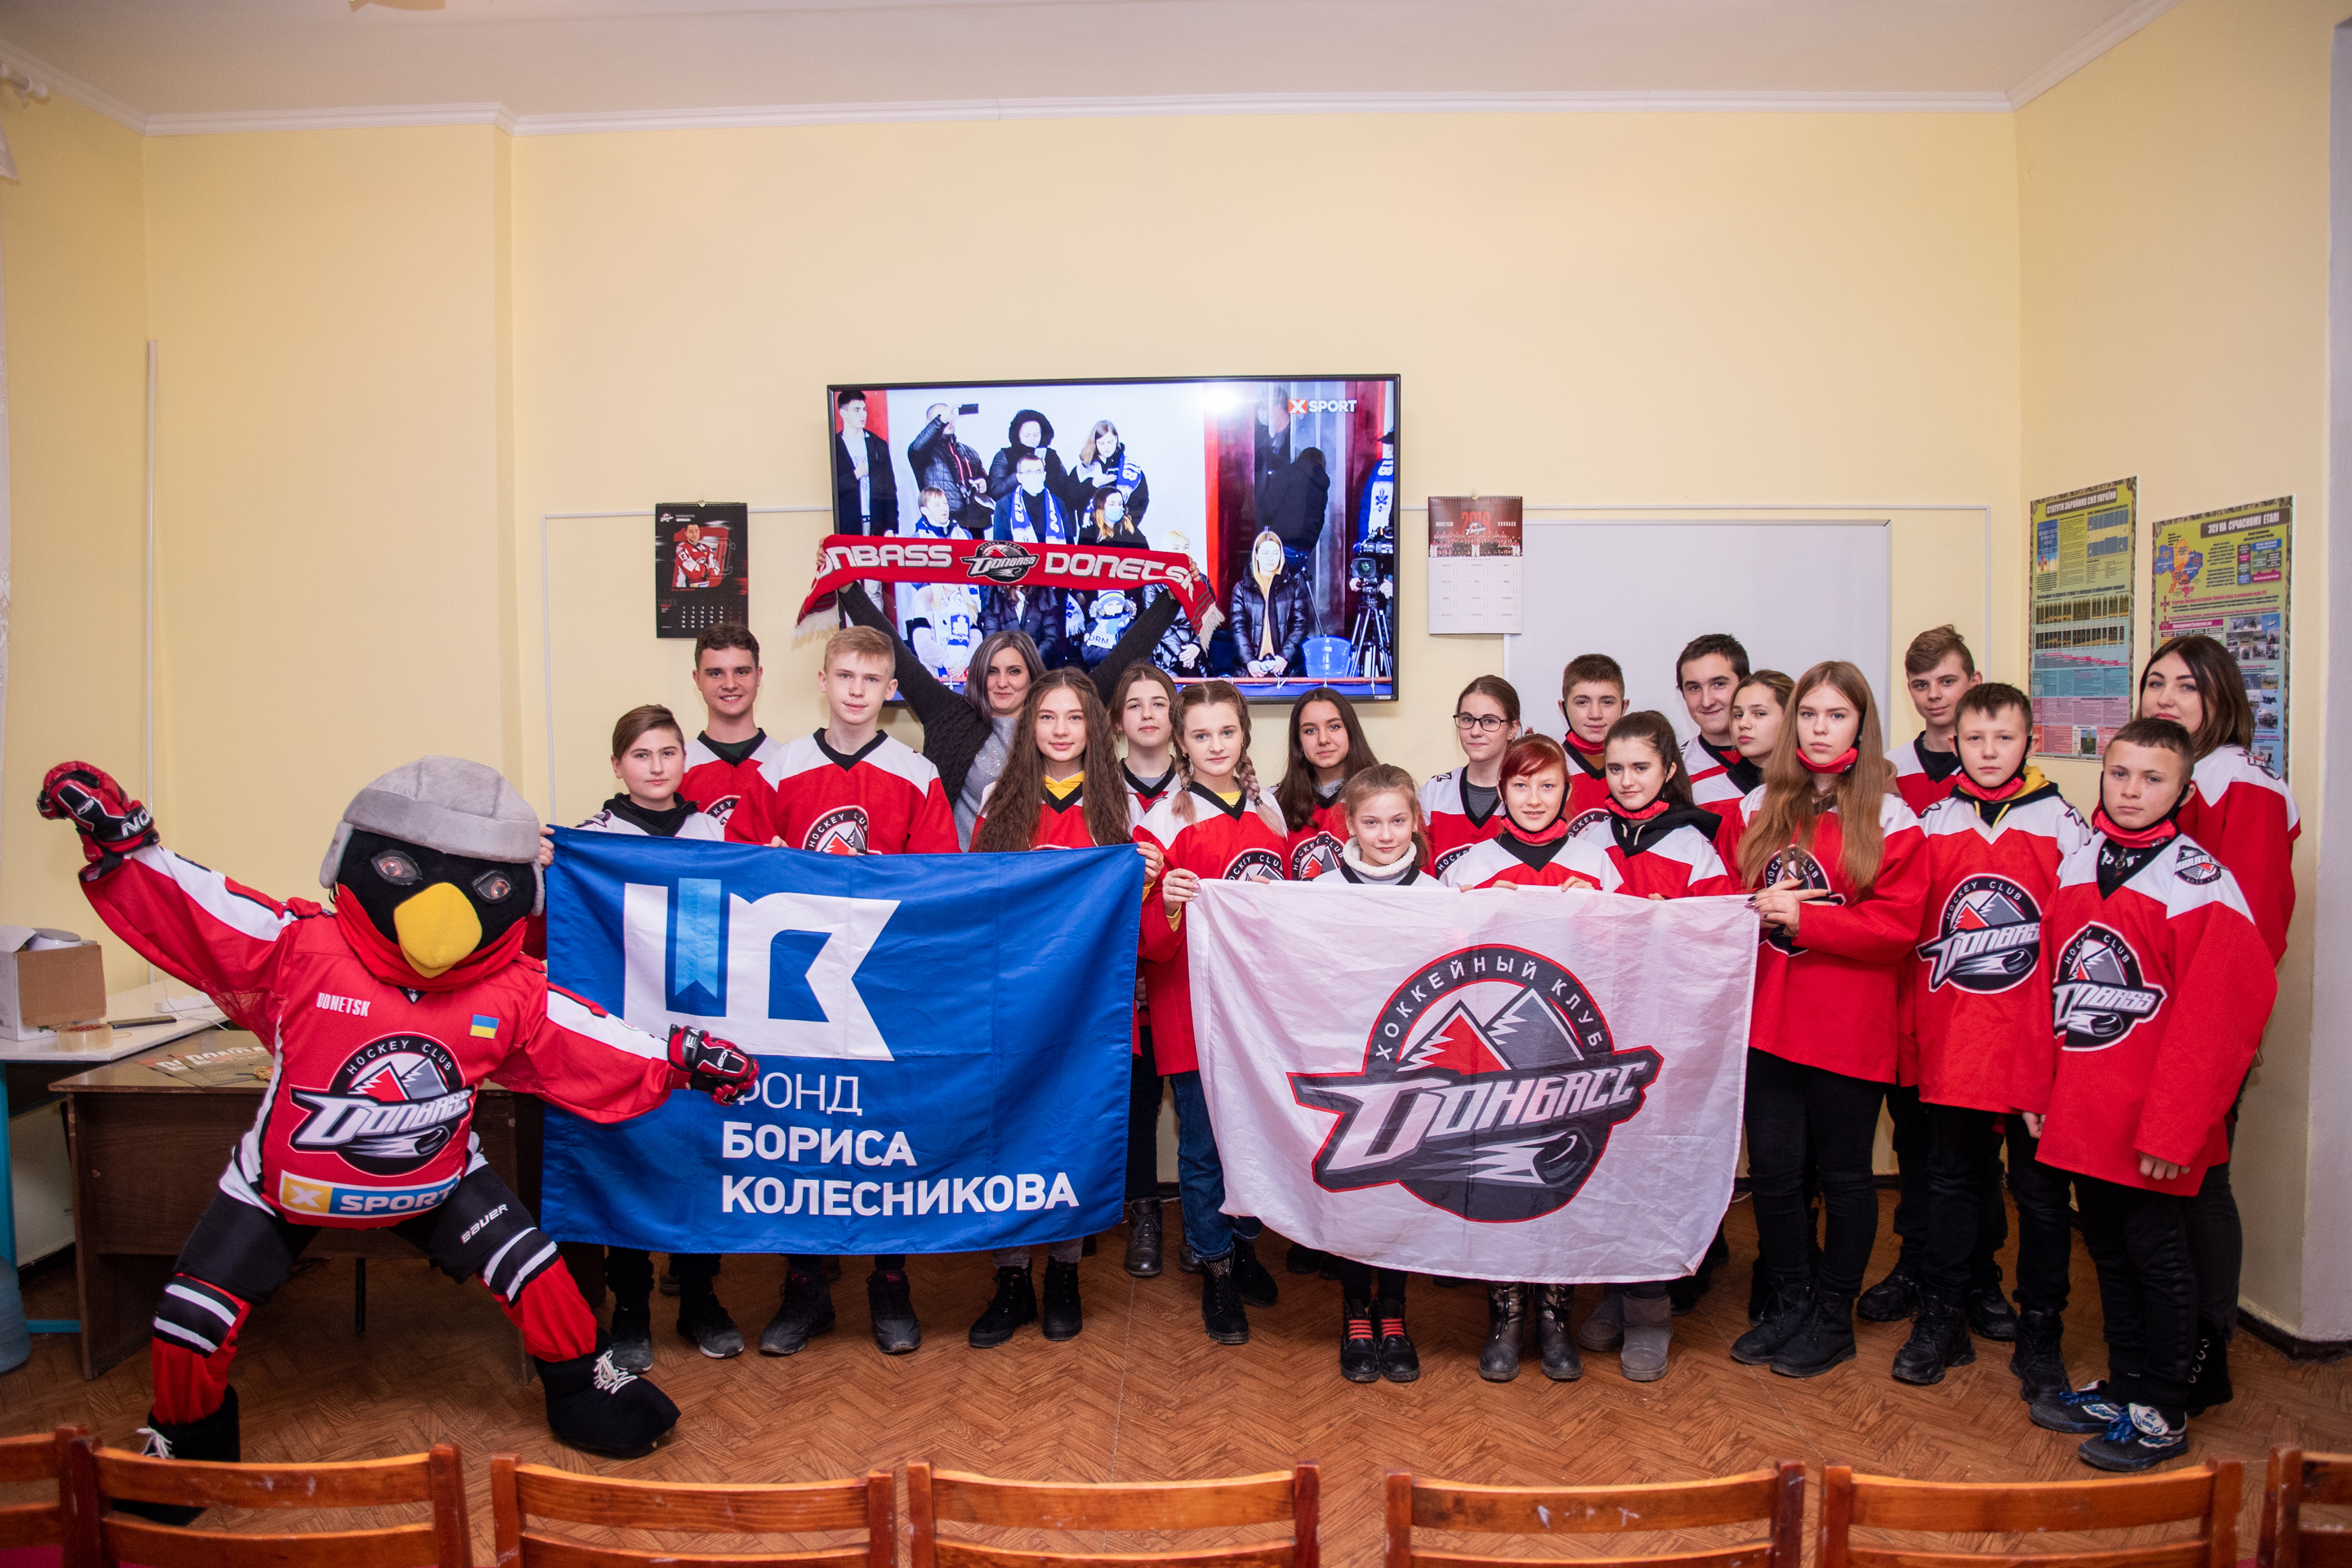 Матч «Сокол» — «Донбасс»: юные фанаты Константиновки и Шахово поддержали любимый клуб